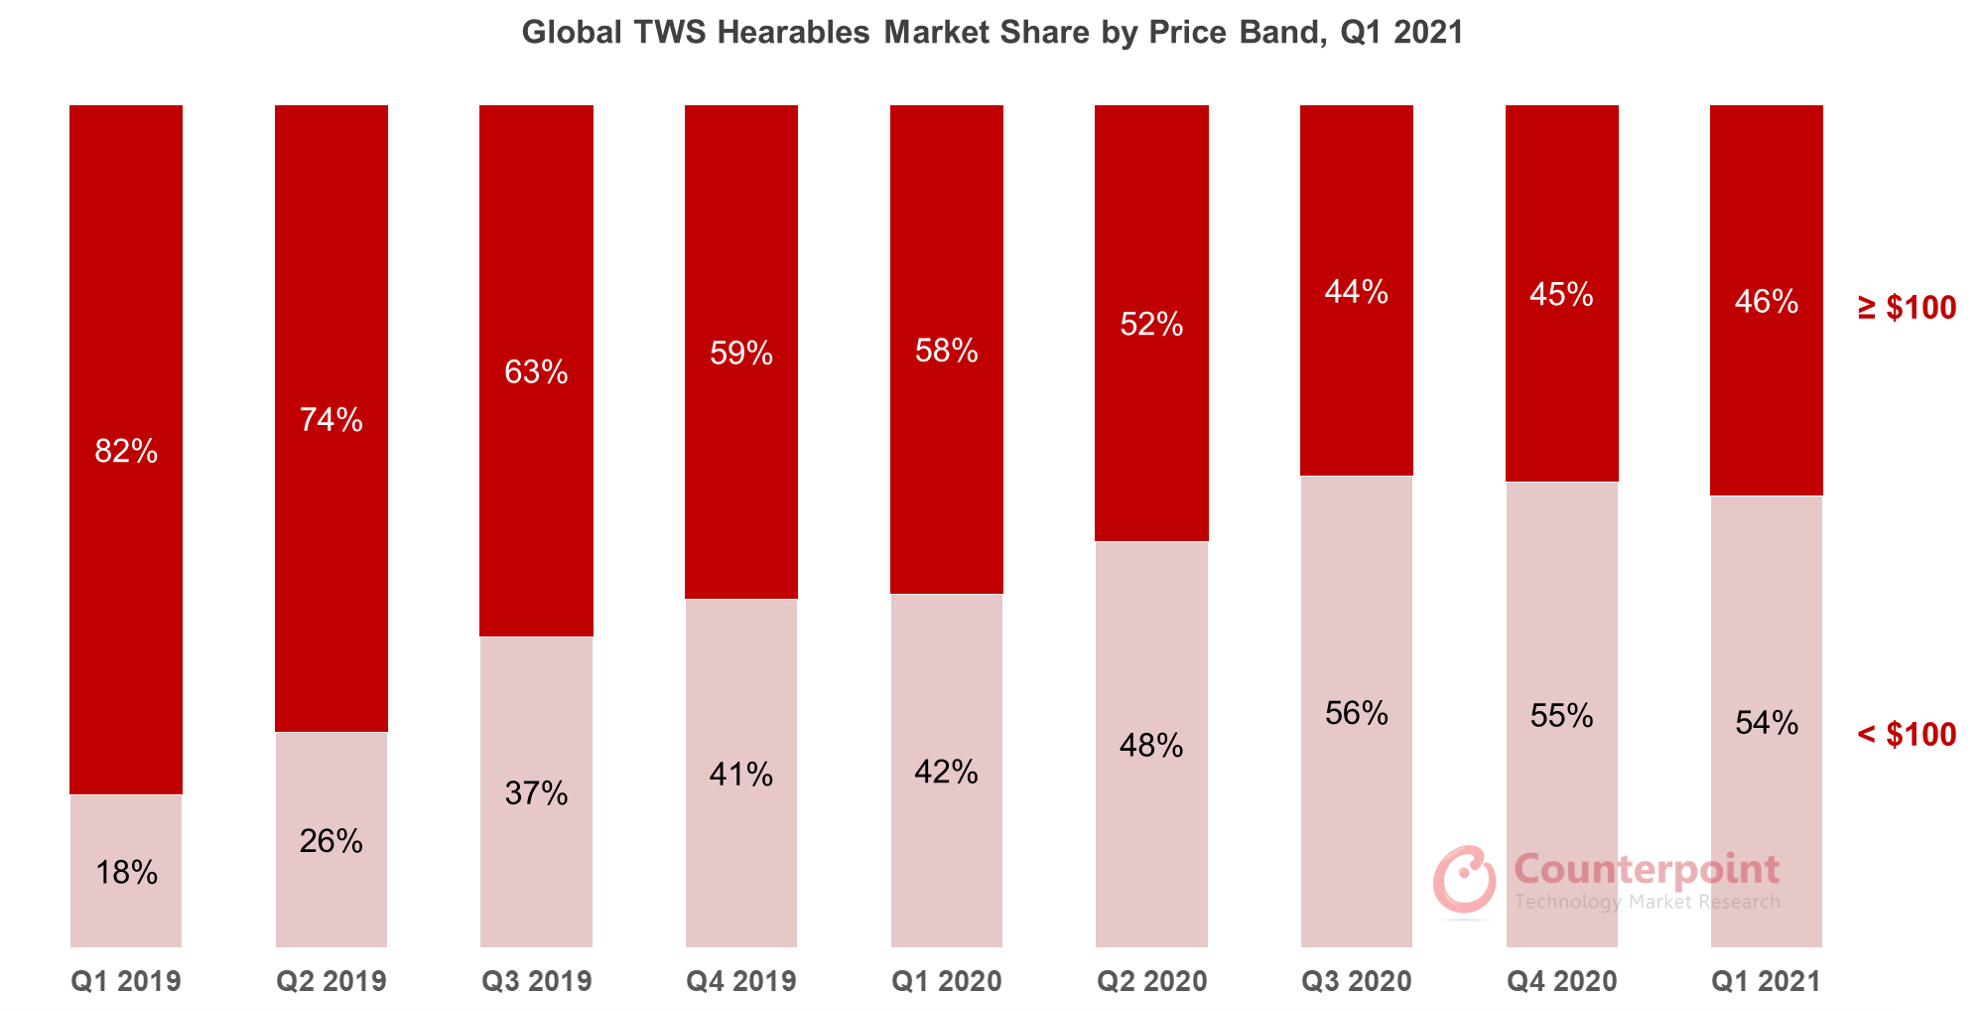 Counterpoint Research全球按价格区间划分的TWS可听设备市场份额，2021年第一季度